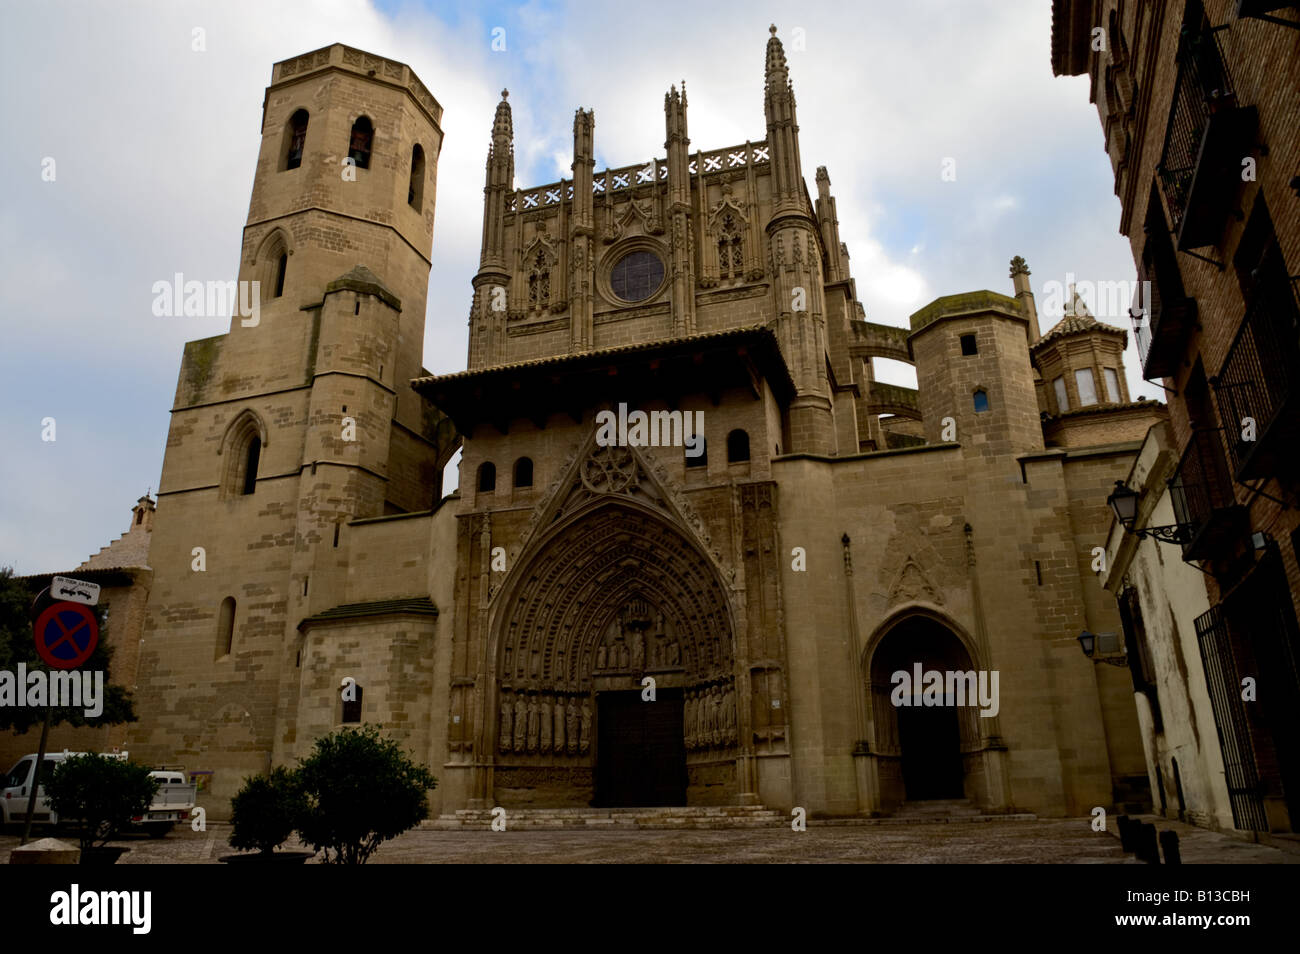 La cathédrale de style gothique du 13e siècle (Catedral de la Transfiguración del Señor). Huesca, Aragon, Espagne Banque D'Images